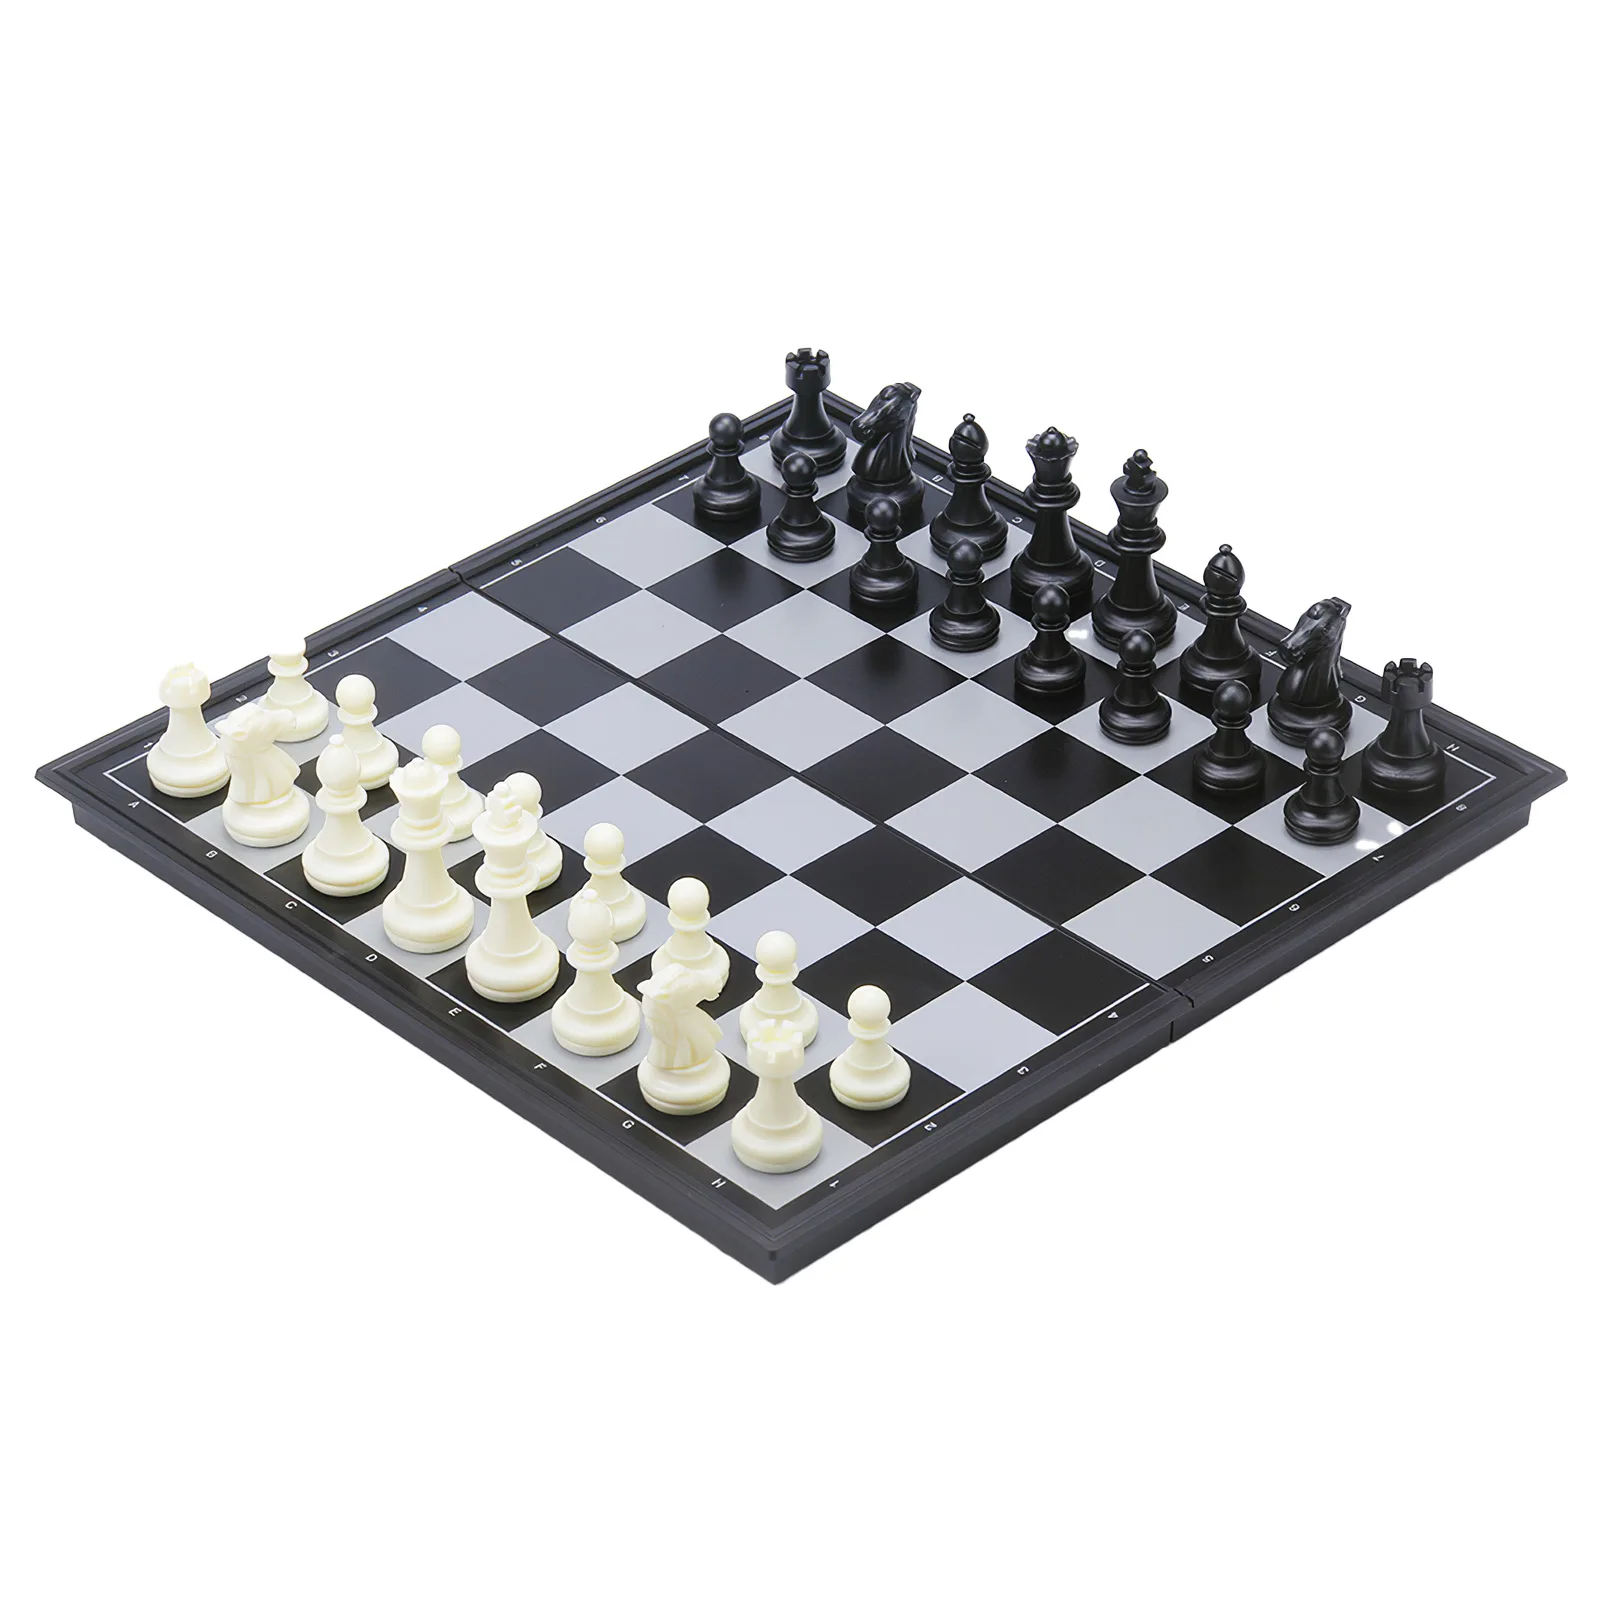 

Традиционная Классическая игра, магнитный деревянный складной Шахматный набор, валяная доска, внутреннее хранилище, подарок для взрослых и...